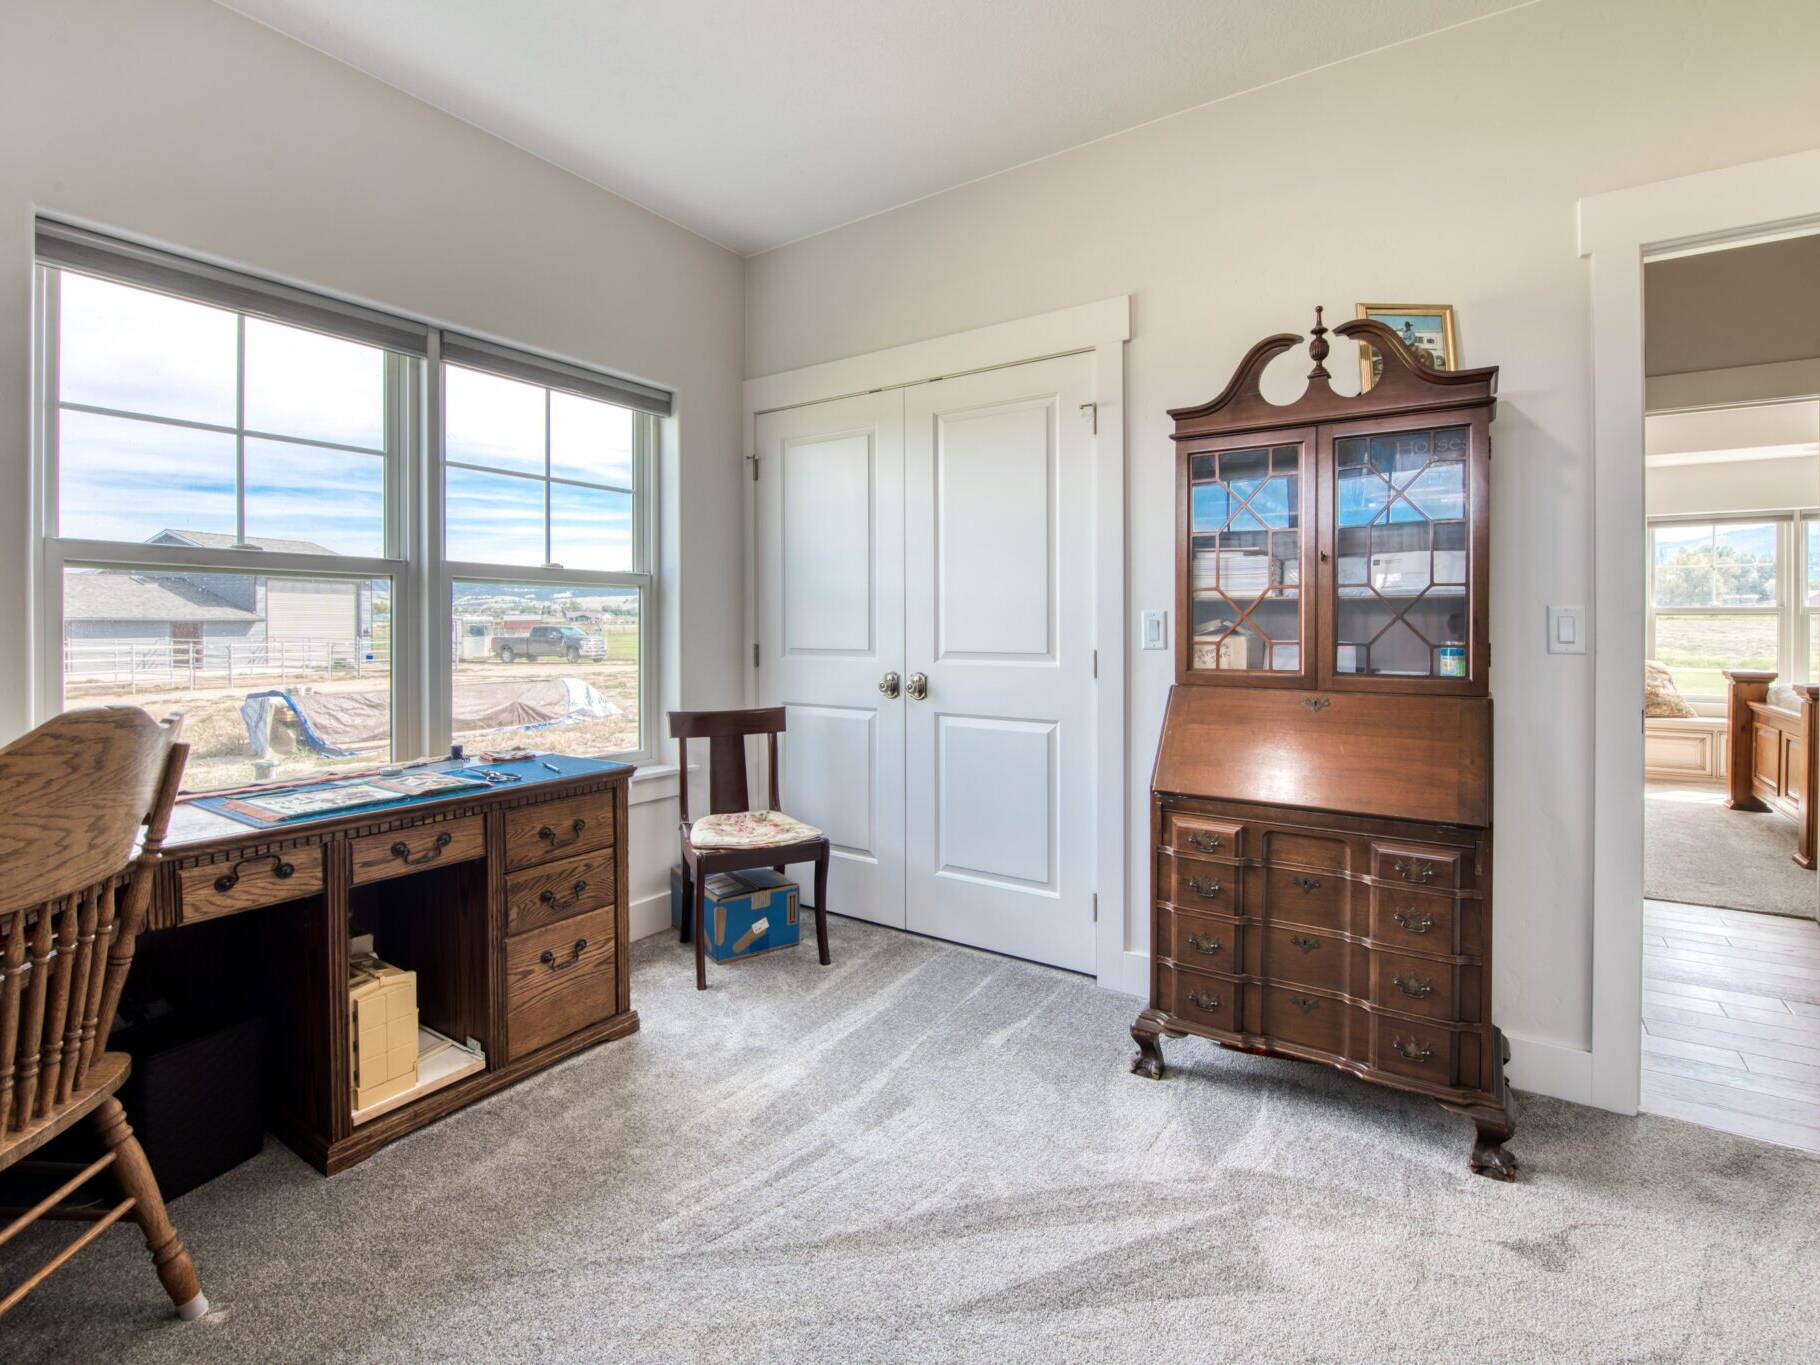 Sewing room/Guest bedroom in a custom home built by Big Sky Builders in Stevensville, MT